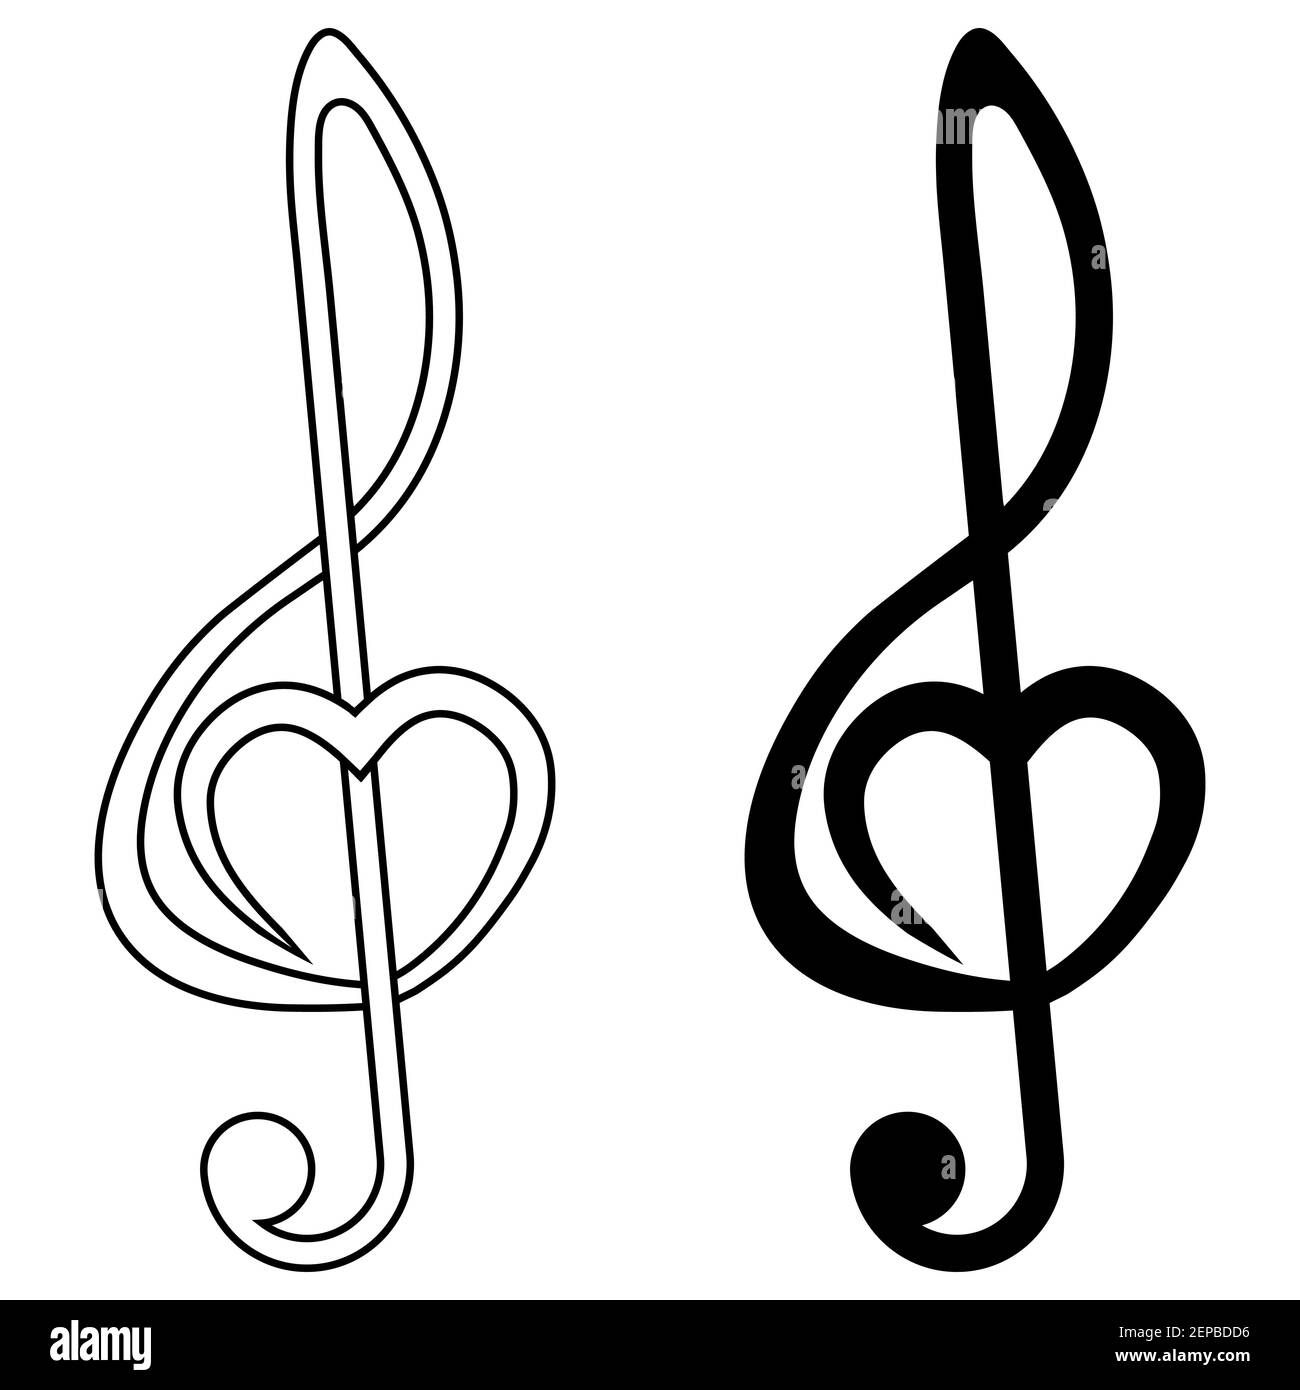 Signe musical aigus clef avec coeur, vecteur signe d'amour pour la musique, symbole musique fan audiophile Illustration de Vecteur